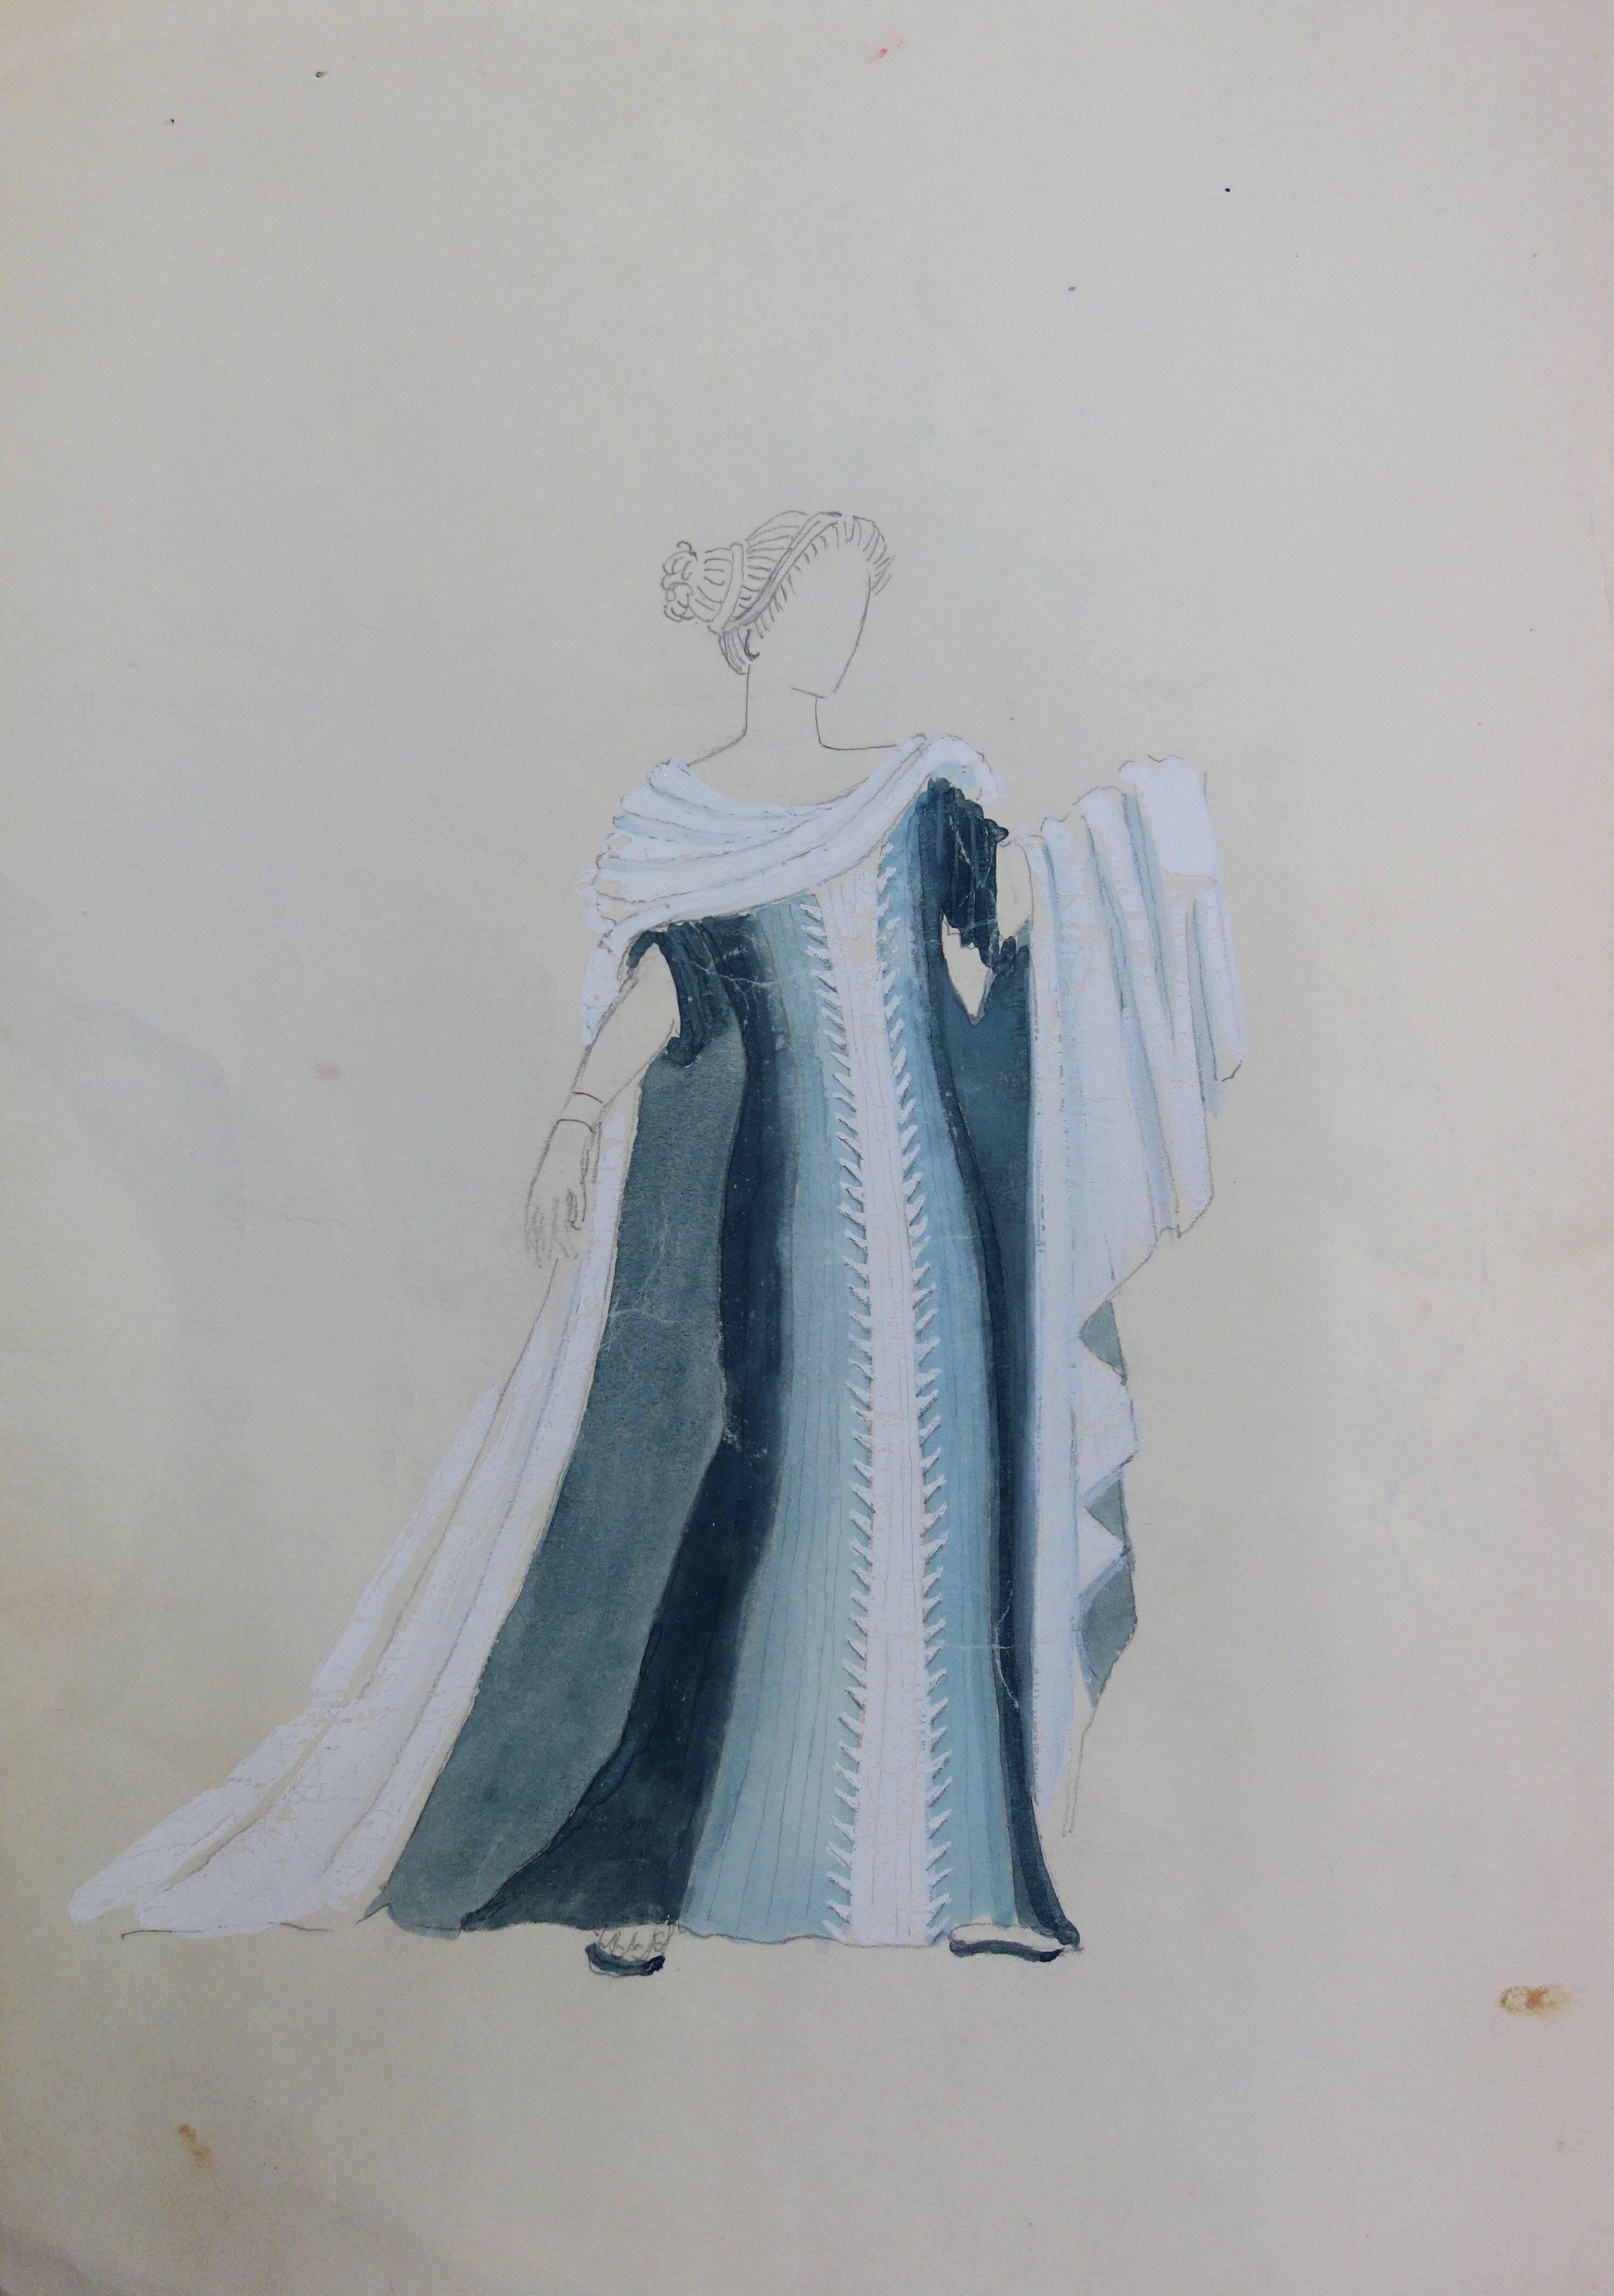 Blaues blaues Kleid: Antikes griechisches Kostüm - Original Aquarellzeichnung